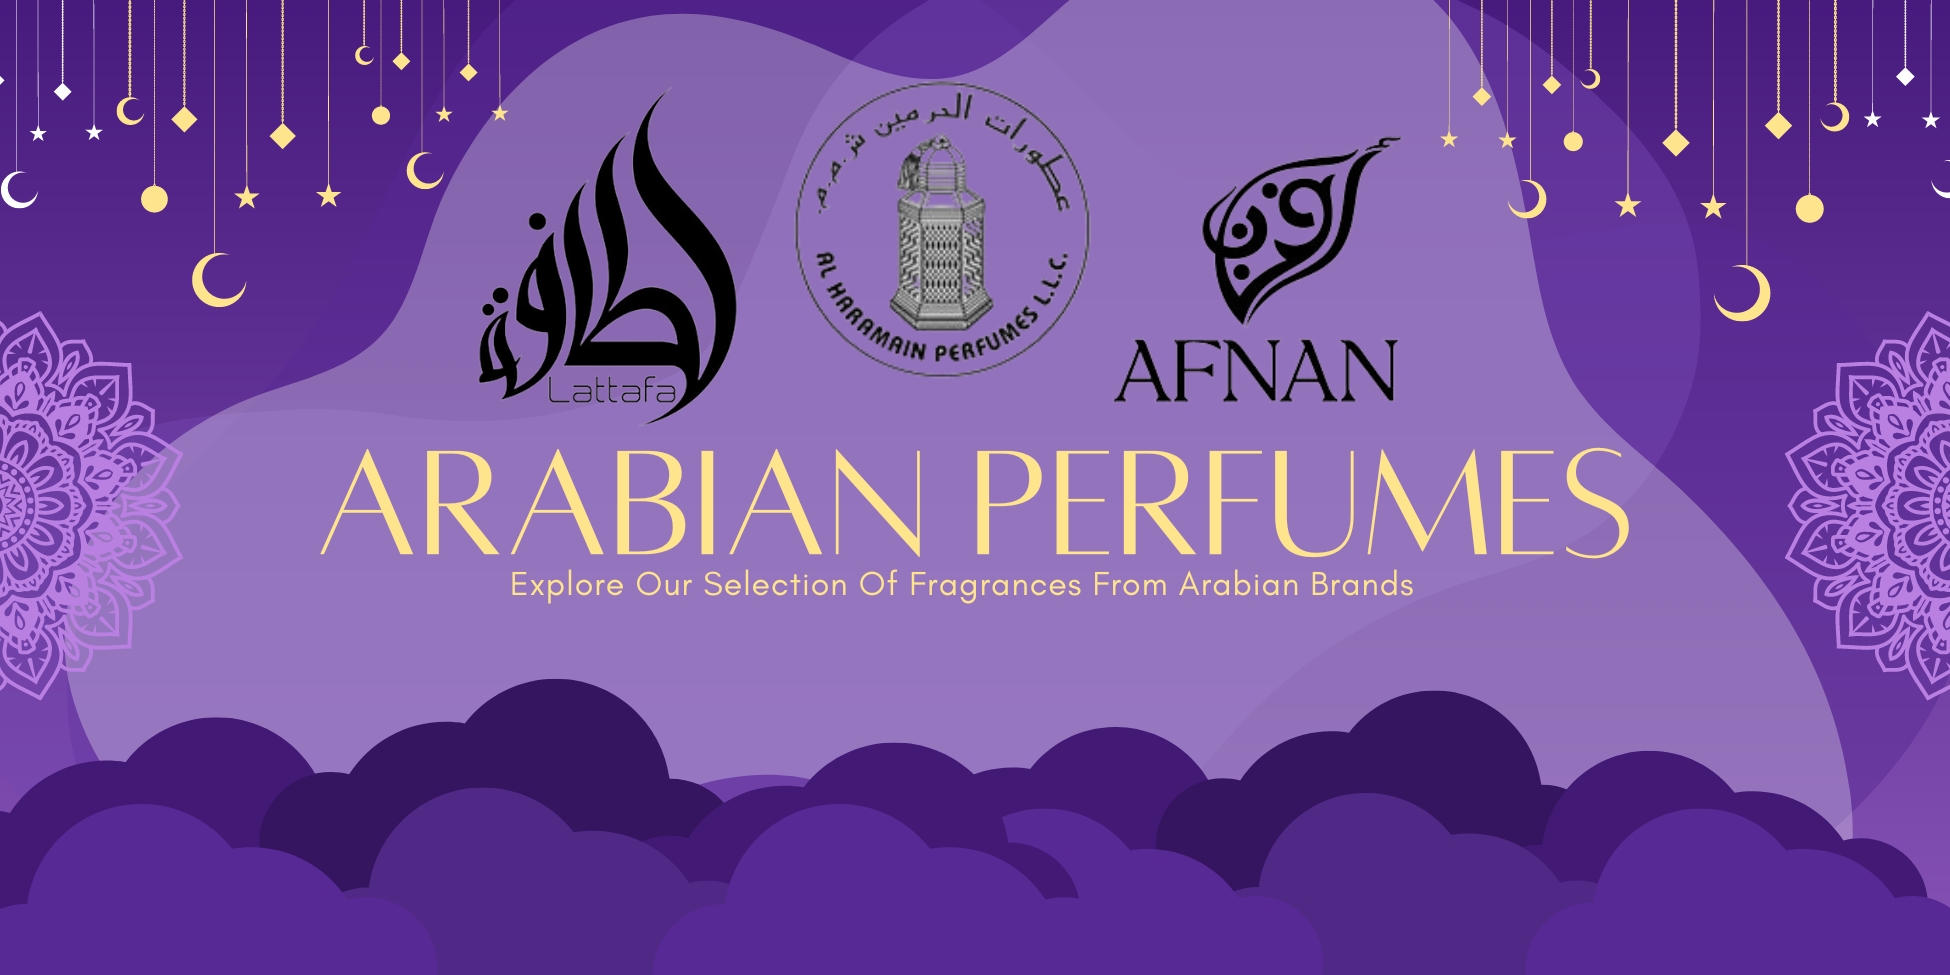 Arabian Perfumes